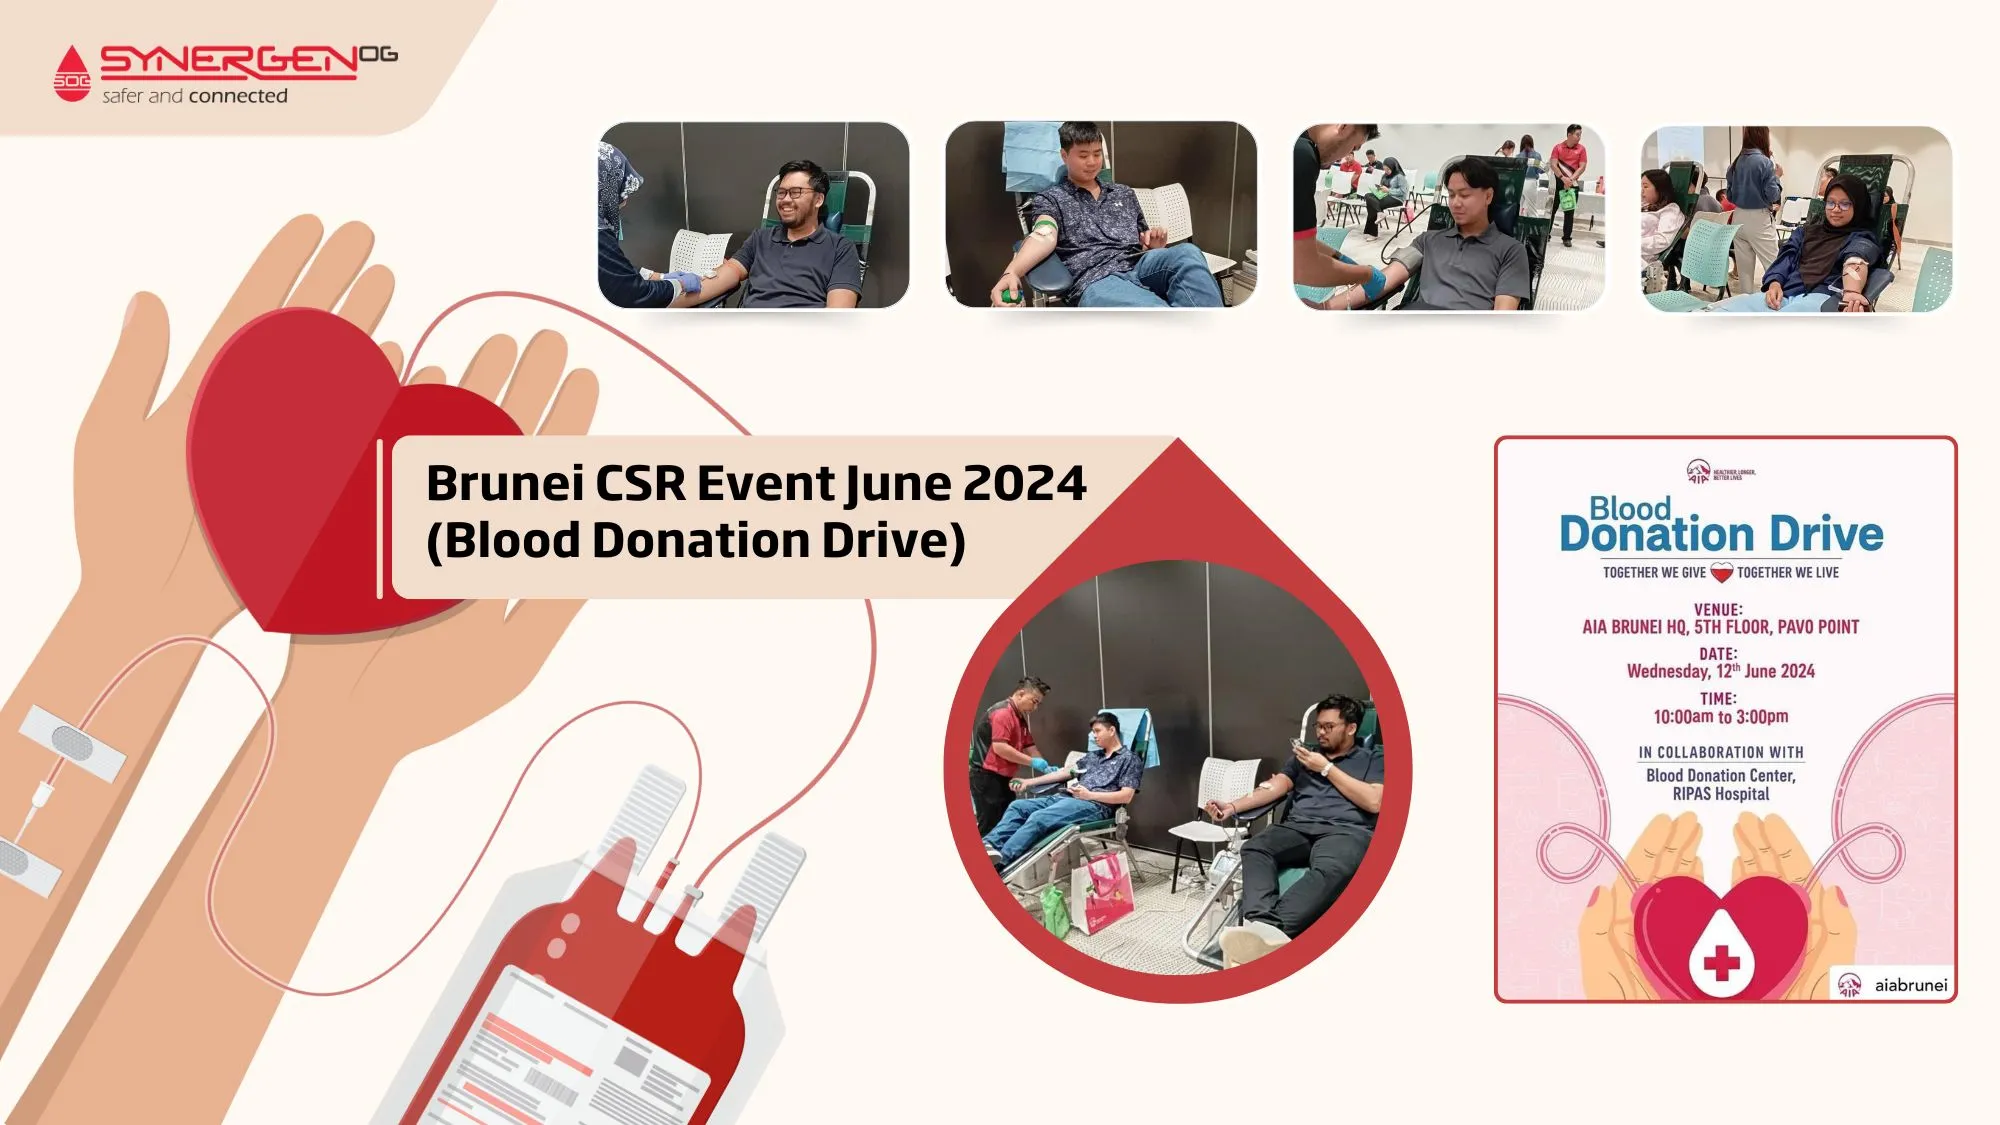 Brunei CSR Event June 2024 (Blood Donation Drive)